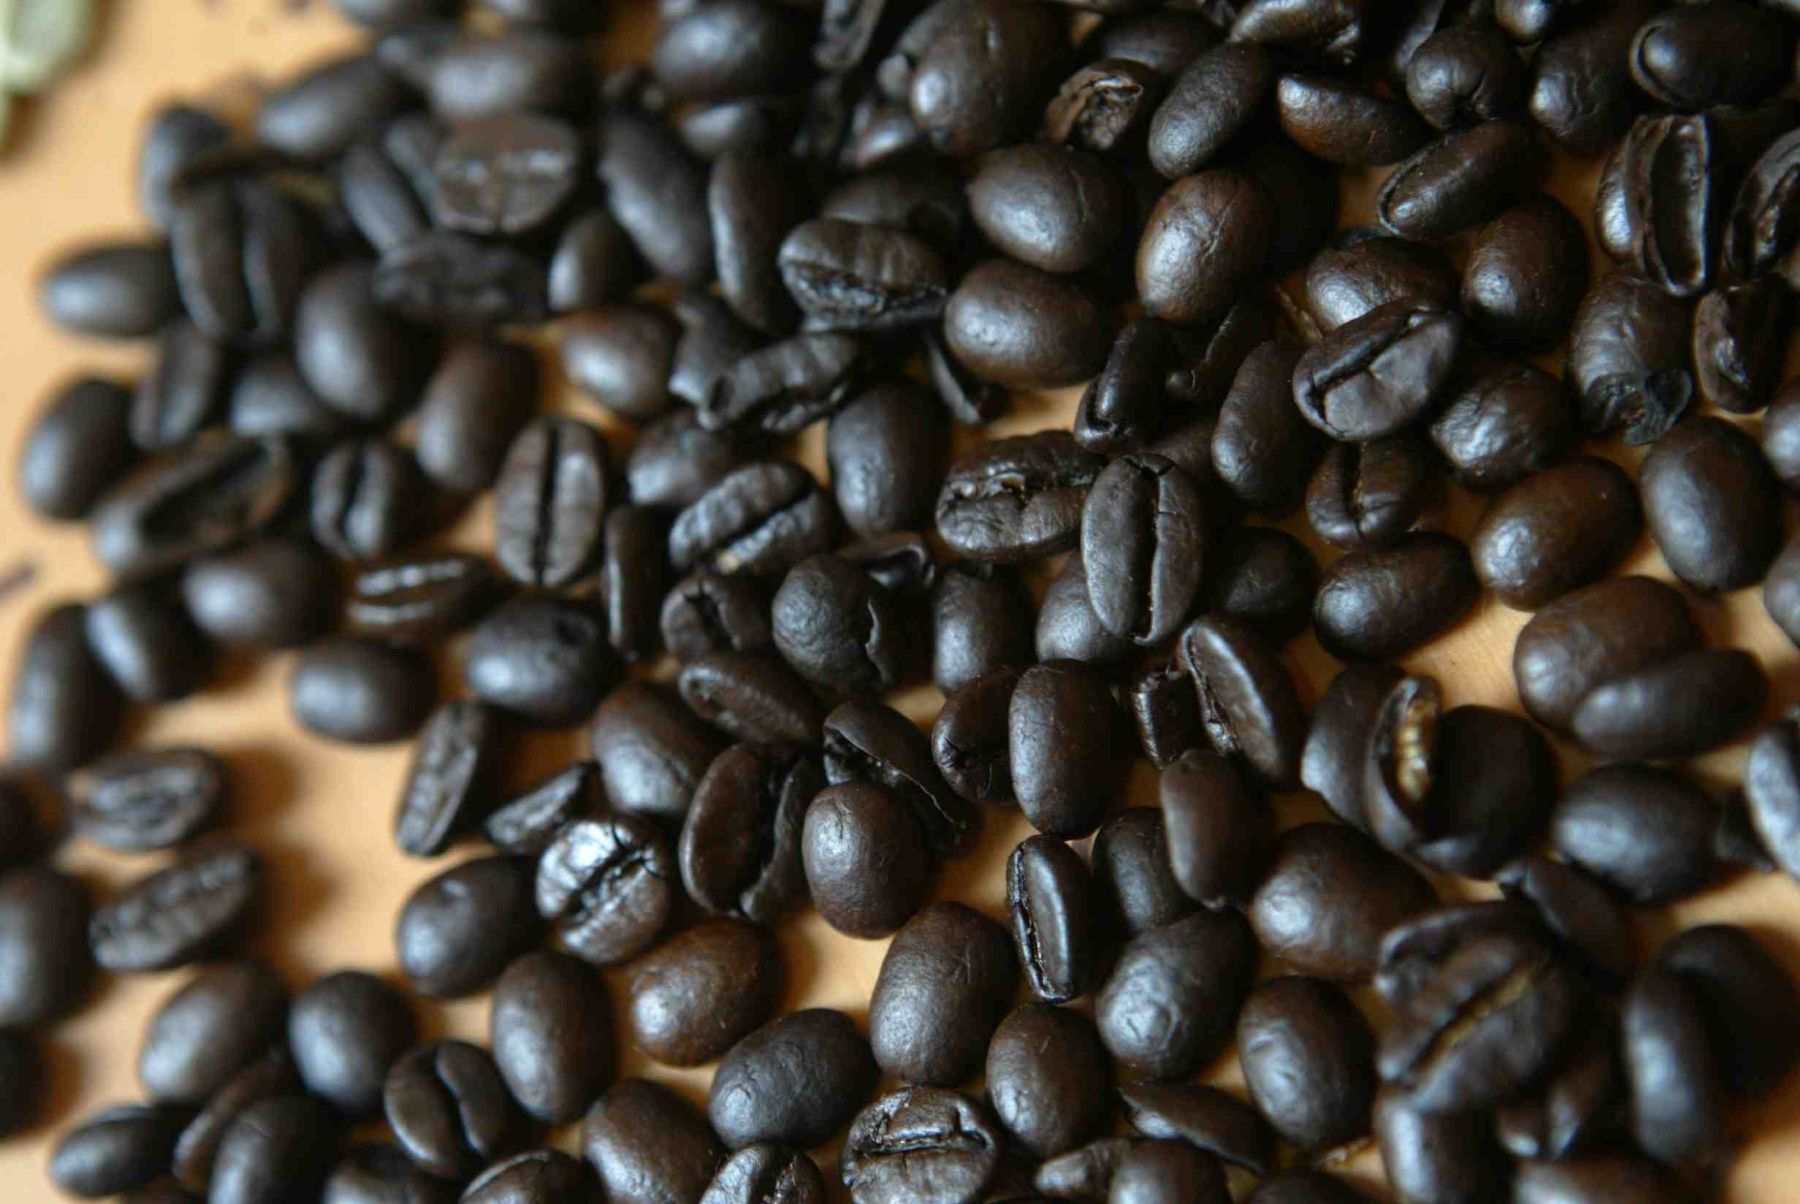 Peruanos consumimos poco café, según organización que agrupa a productores. Foto: ANDINA/archivo